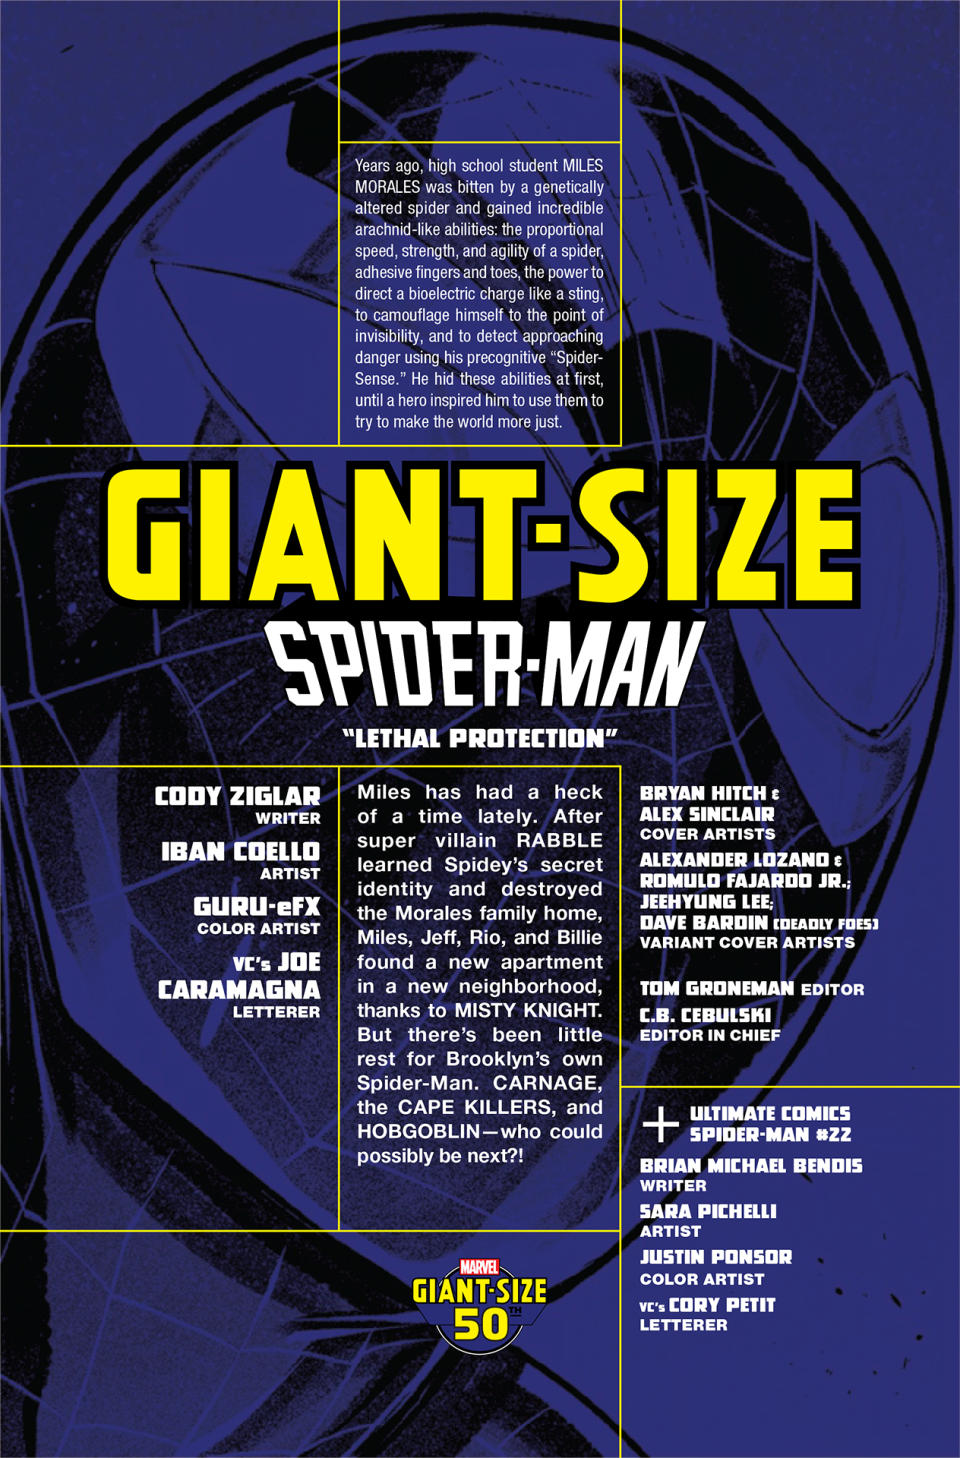 Giant-Size Spider-Man #1 interior art